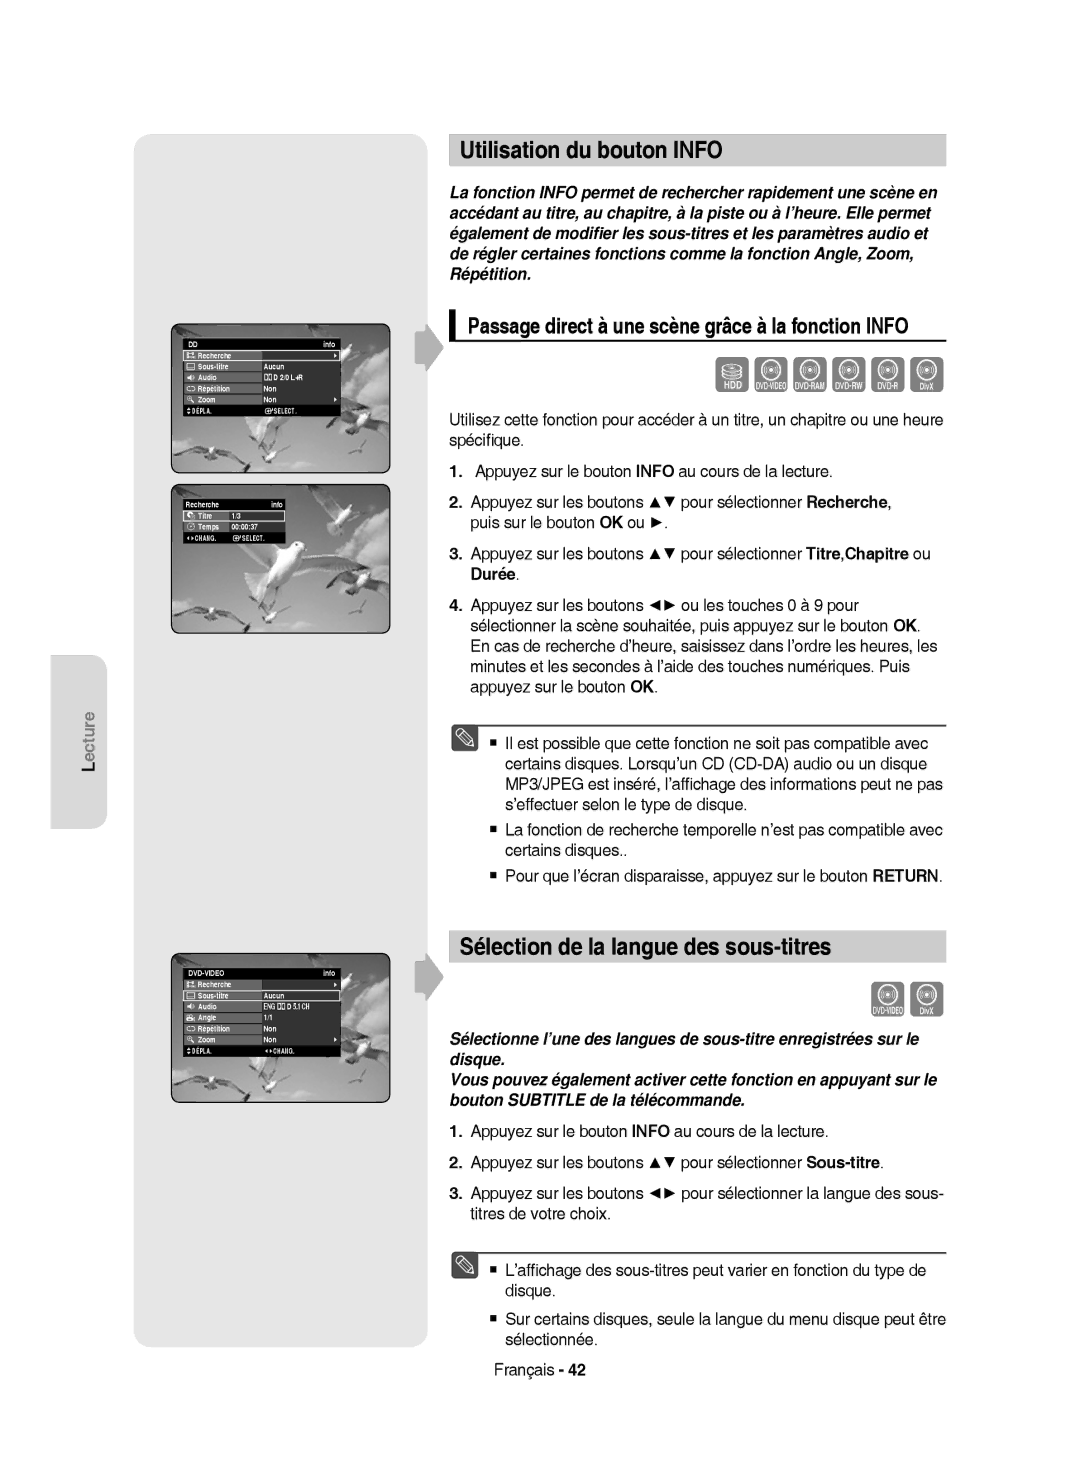 Samsung DVD-HR750/AUS, DVD-HR750/XEG, DVD-HR750/XEB manual Utilisation du bouton Info, Sélection de la langue des sous-titres 